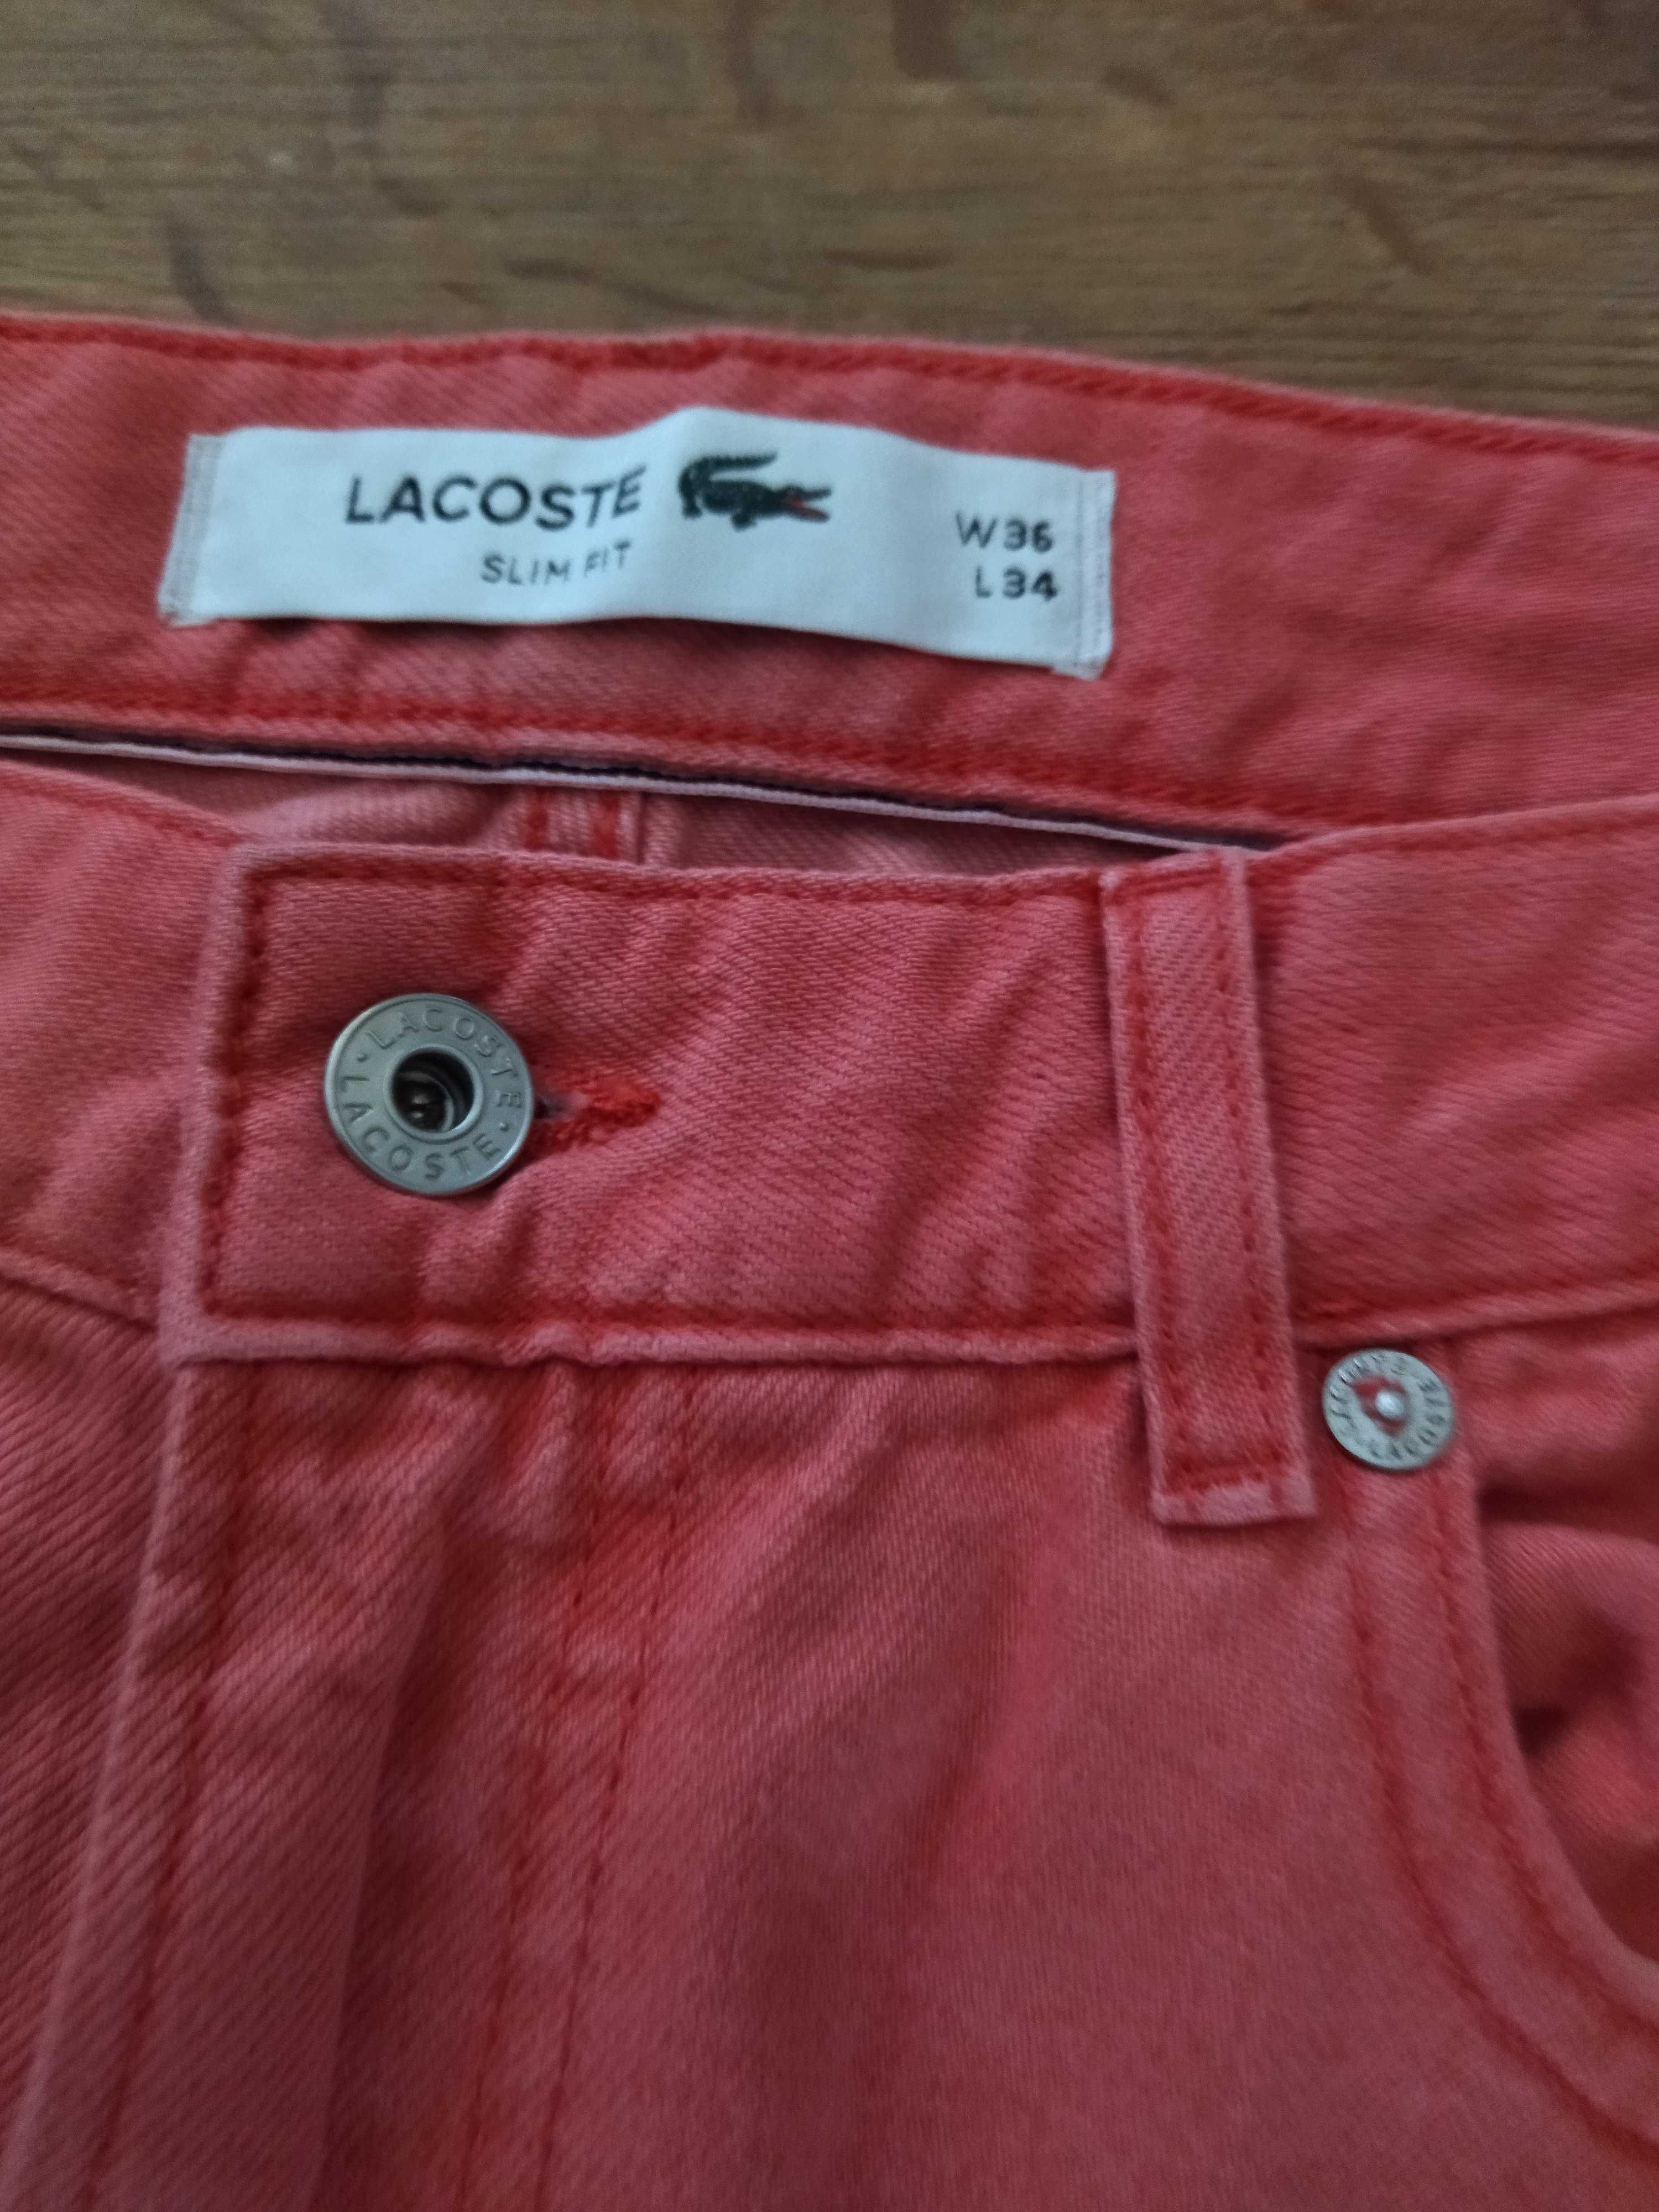 LACOSTE-spodnie męskie slim fit -W36L34